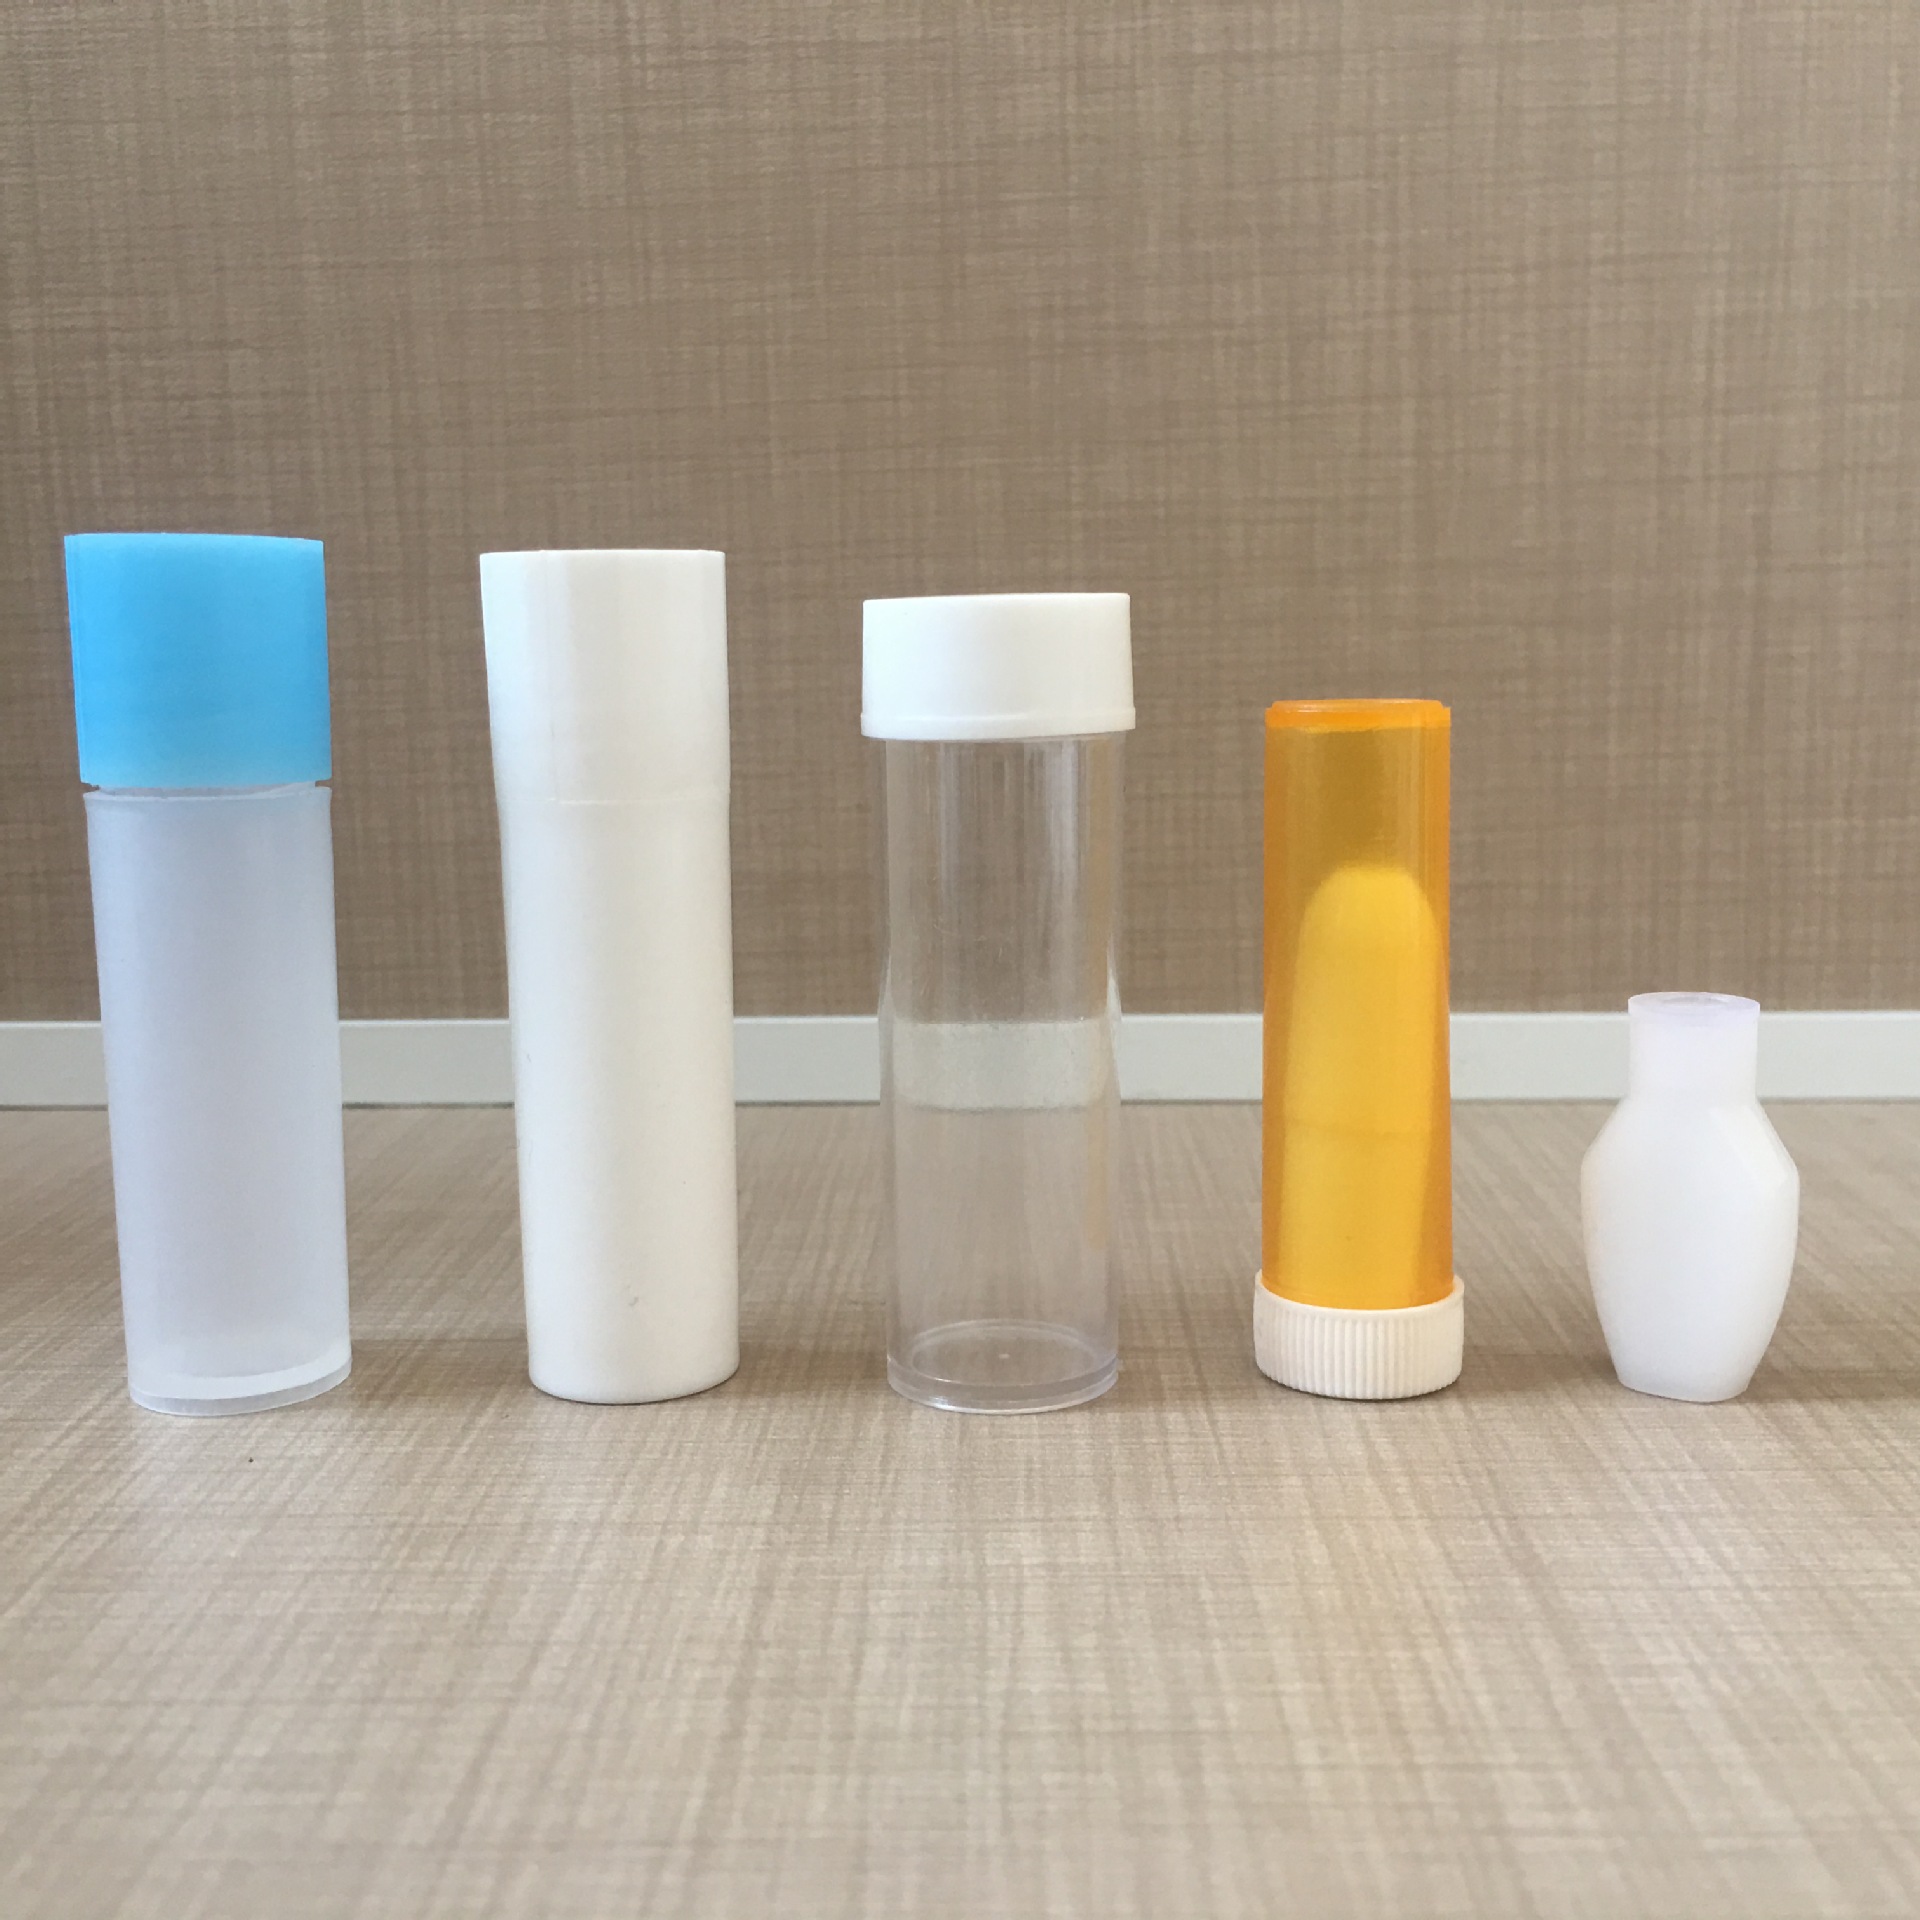 口服液体药用塑料瓶液体塑料瓶外用塑料瓶100ml防盗塑料瓶PE塑料示例图14